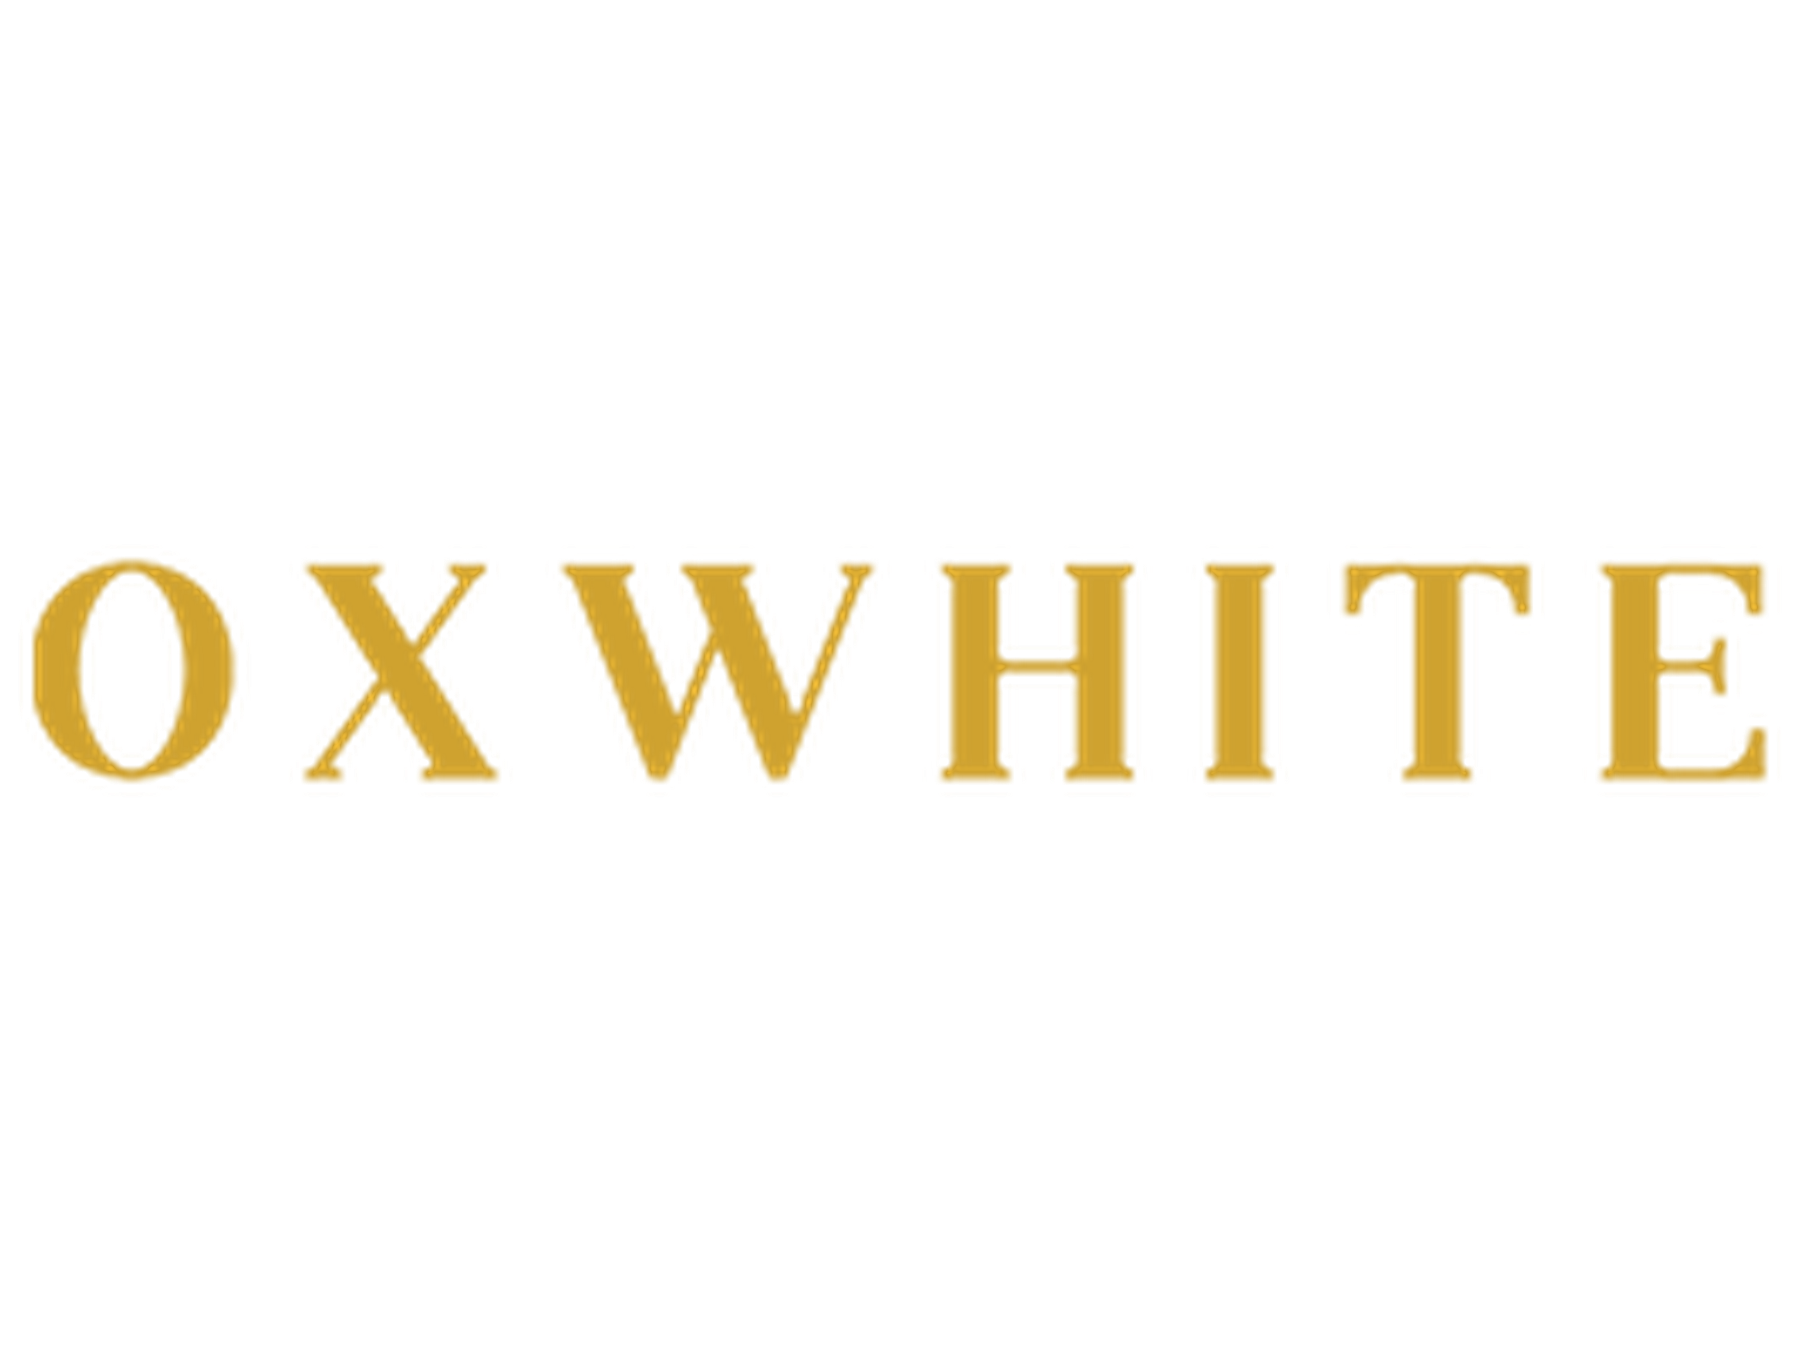 OxWhite Discount Code